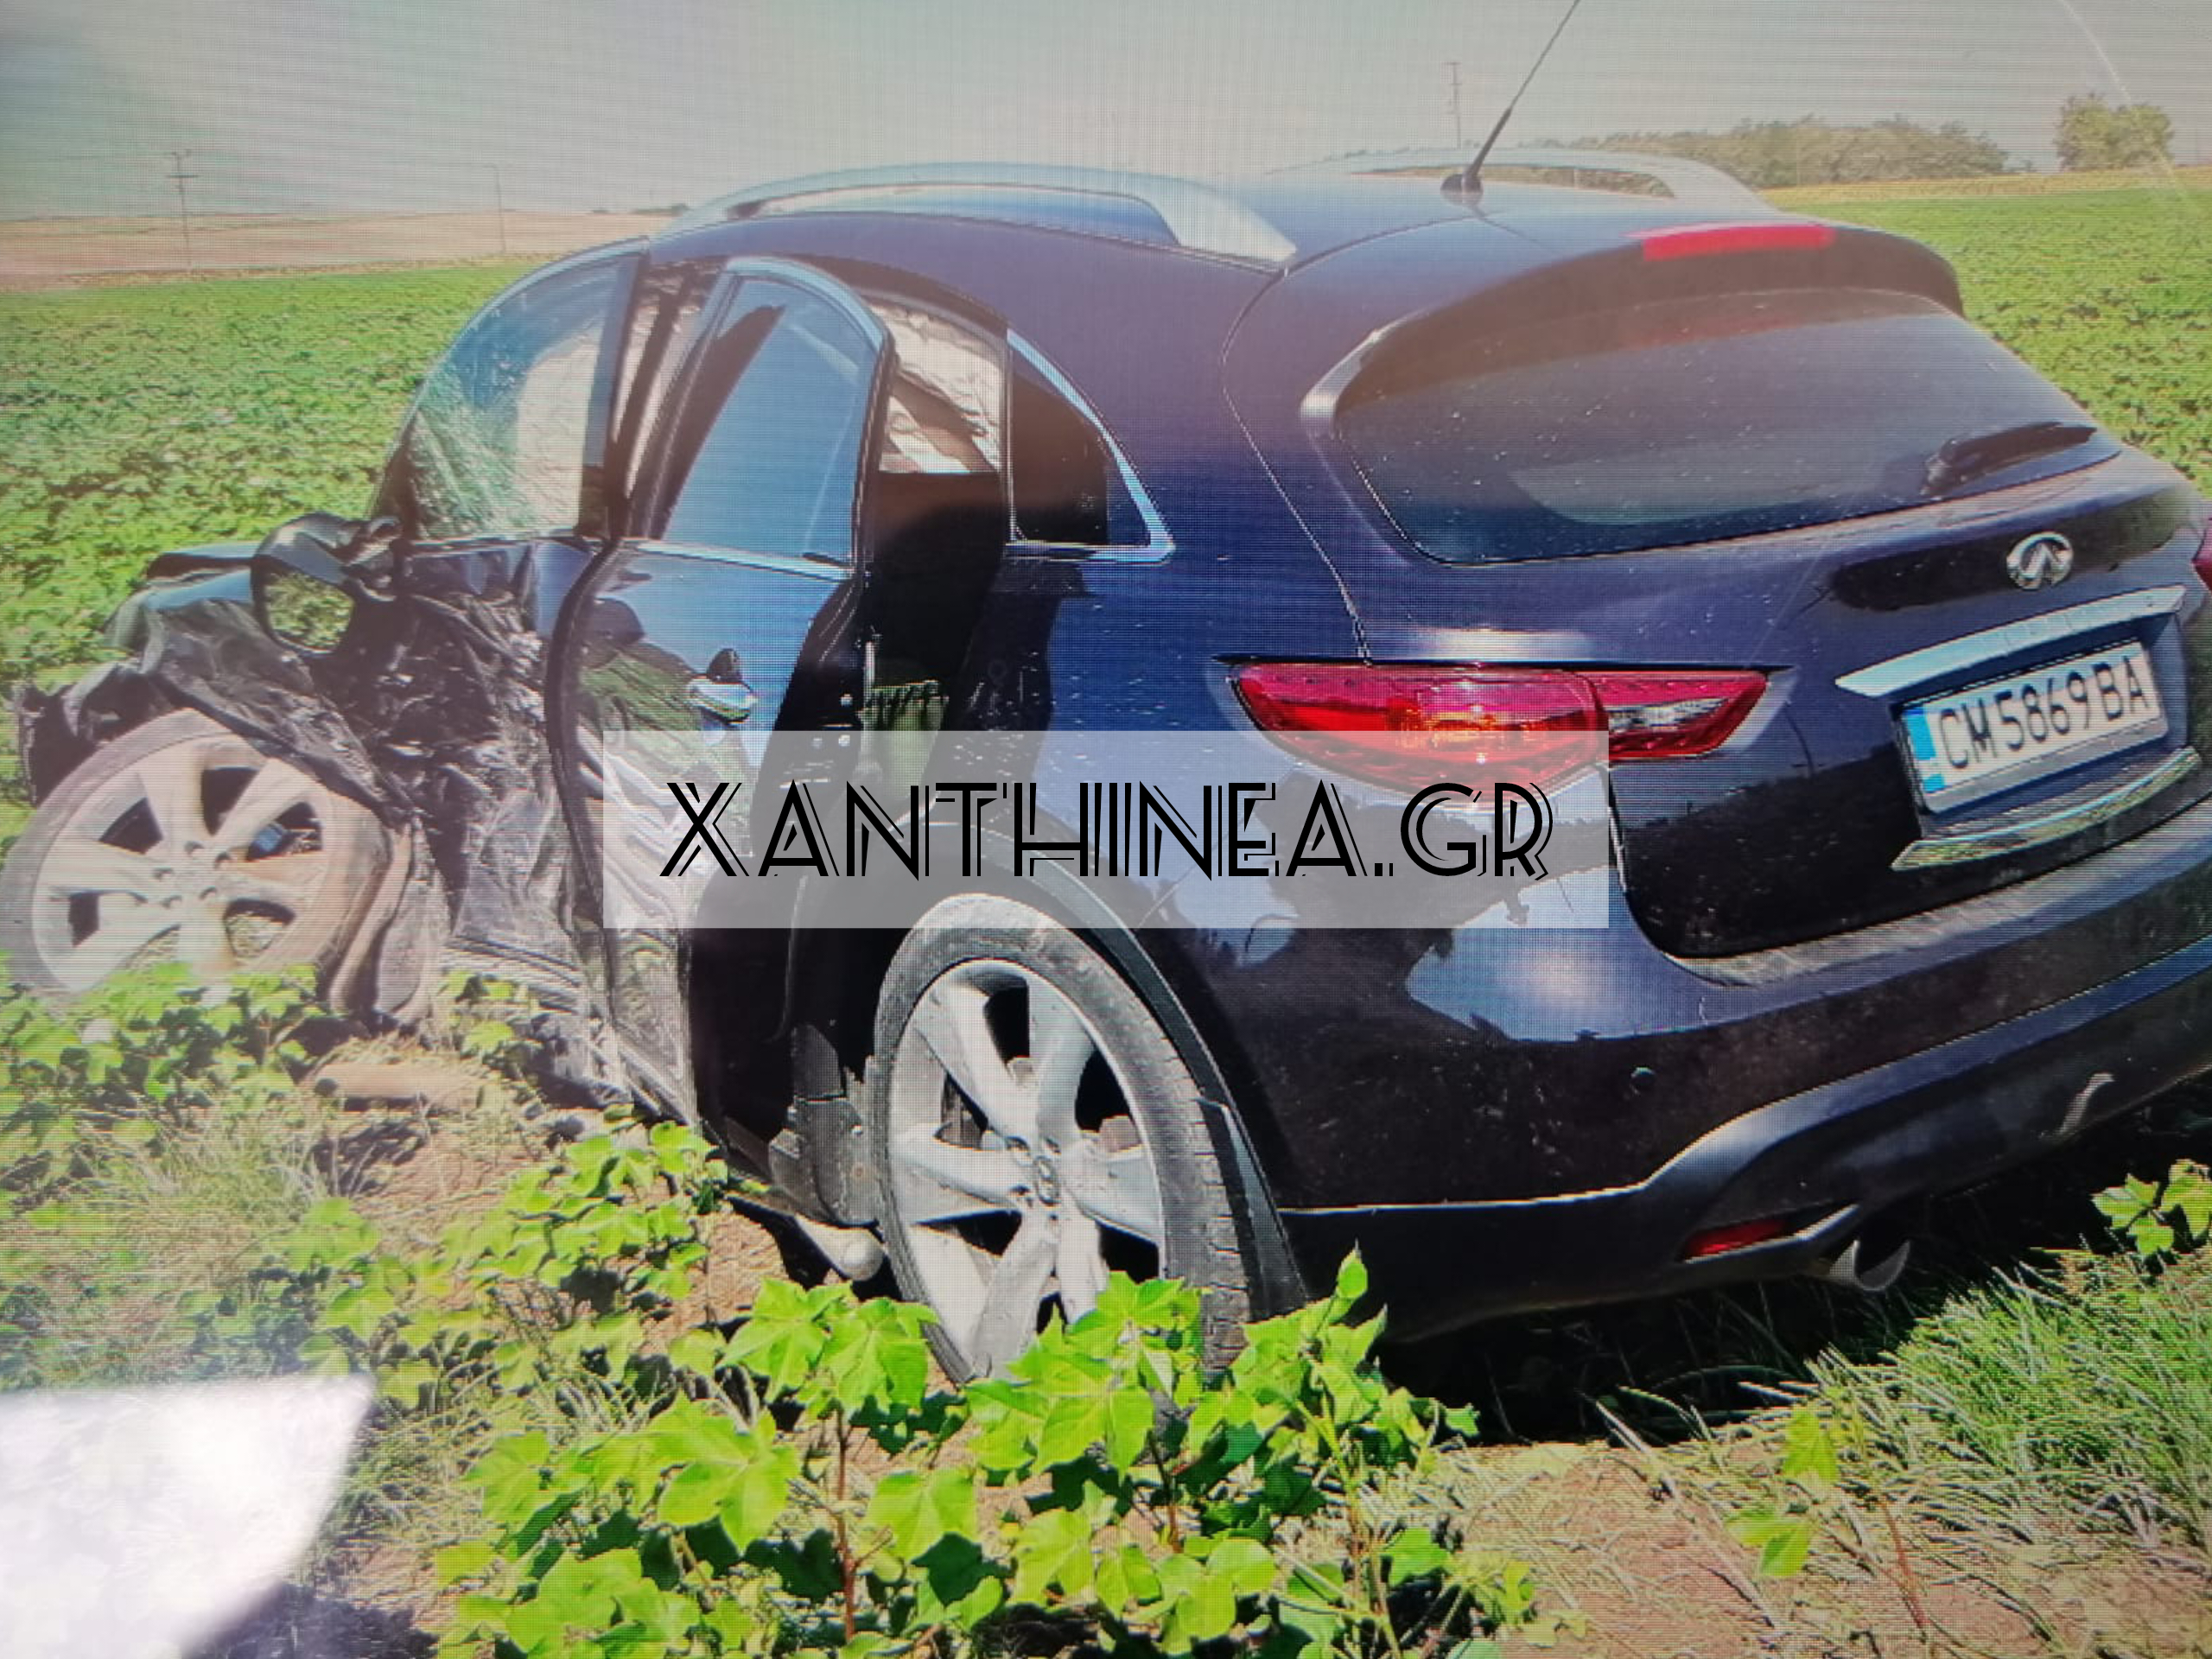 Σοβαρό τροχαίο ατύχημα με εμπλοκή διακινητή στην Ξάνθη